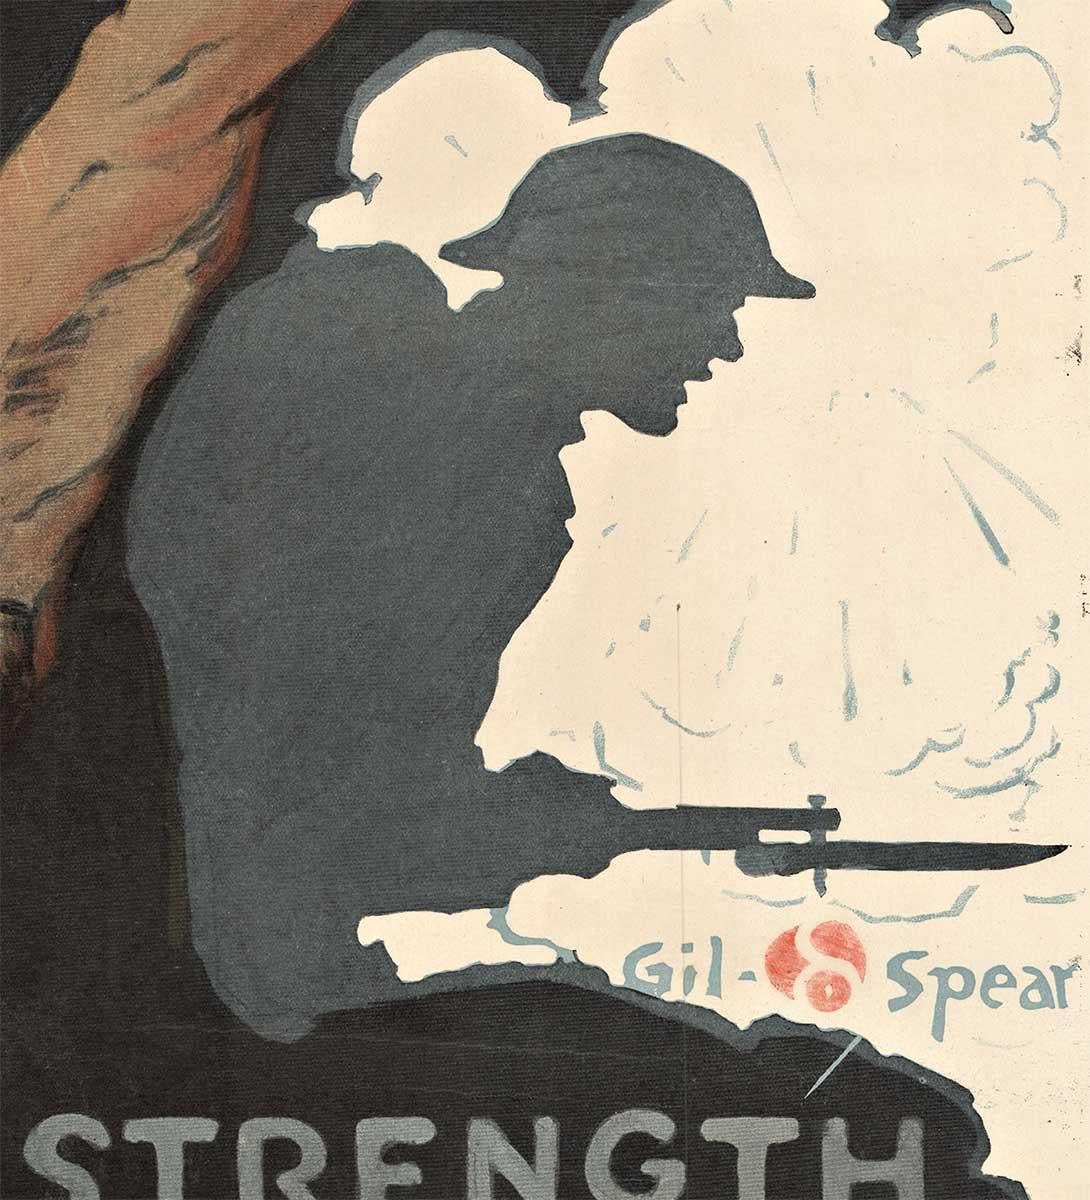 YMCA Workers Lend Your Strength Original-Vintage-Plakat aus dem Ersten Weltkrieg (Schwarz), Print, von Gil Spear